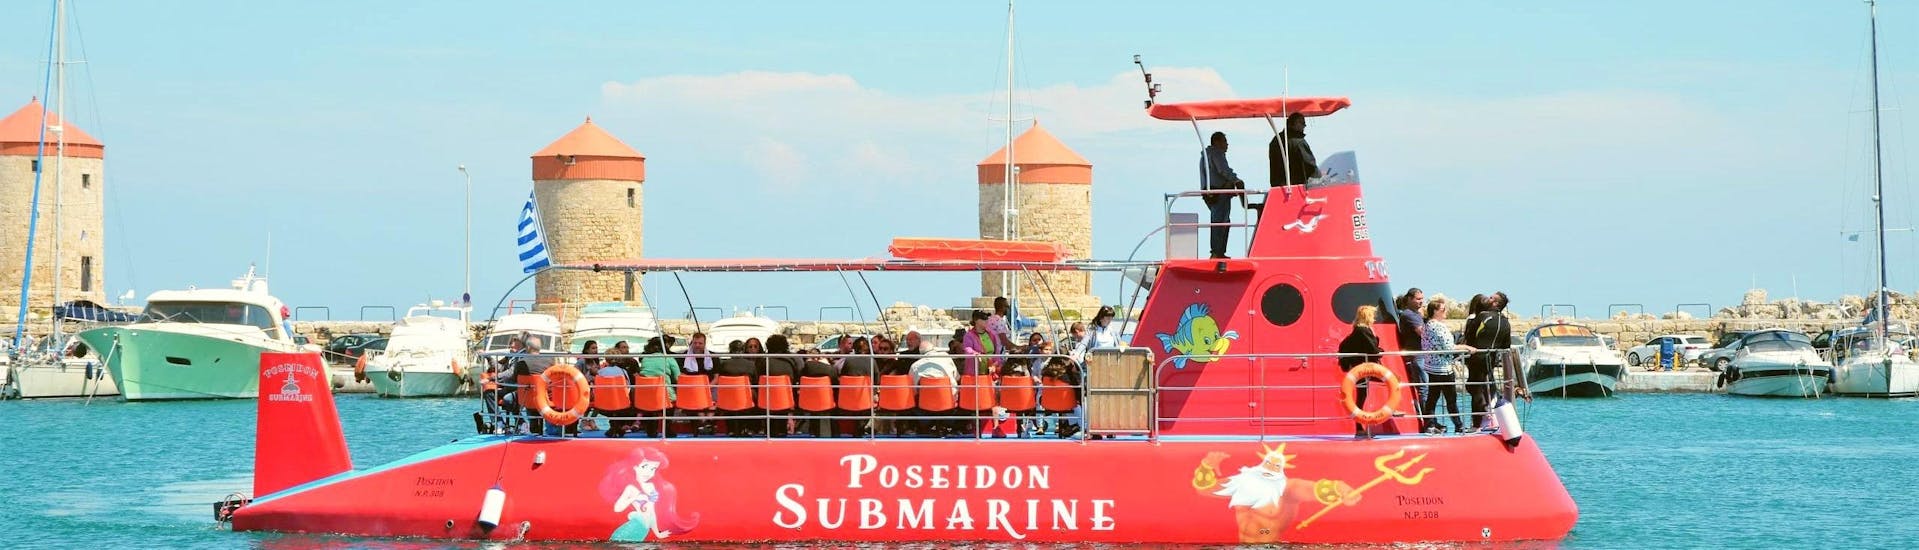 Il semisommergibile della Poseidon Submarine Rhodes sta lasciando il porto di Mandraki.